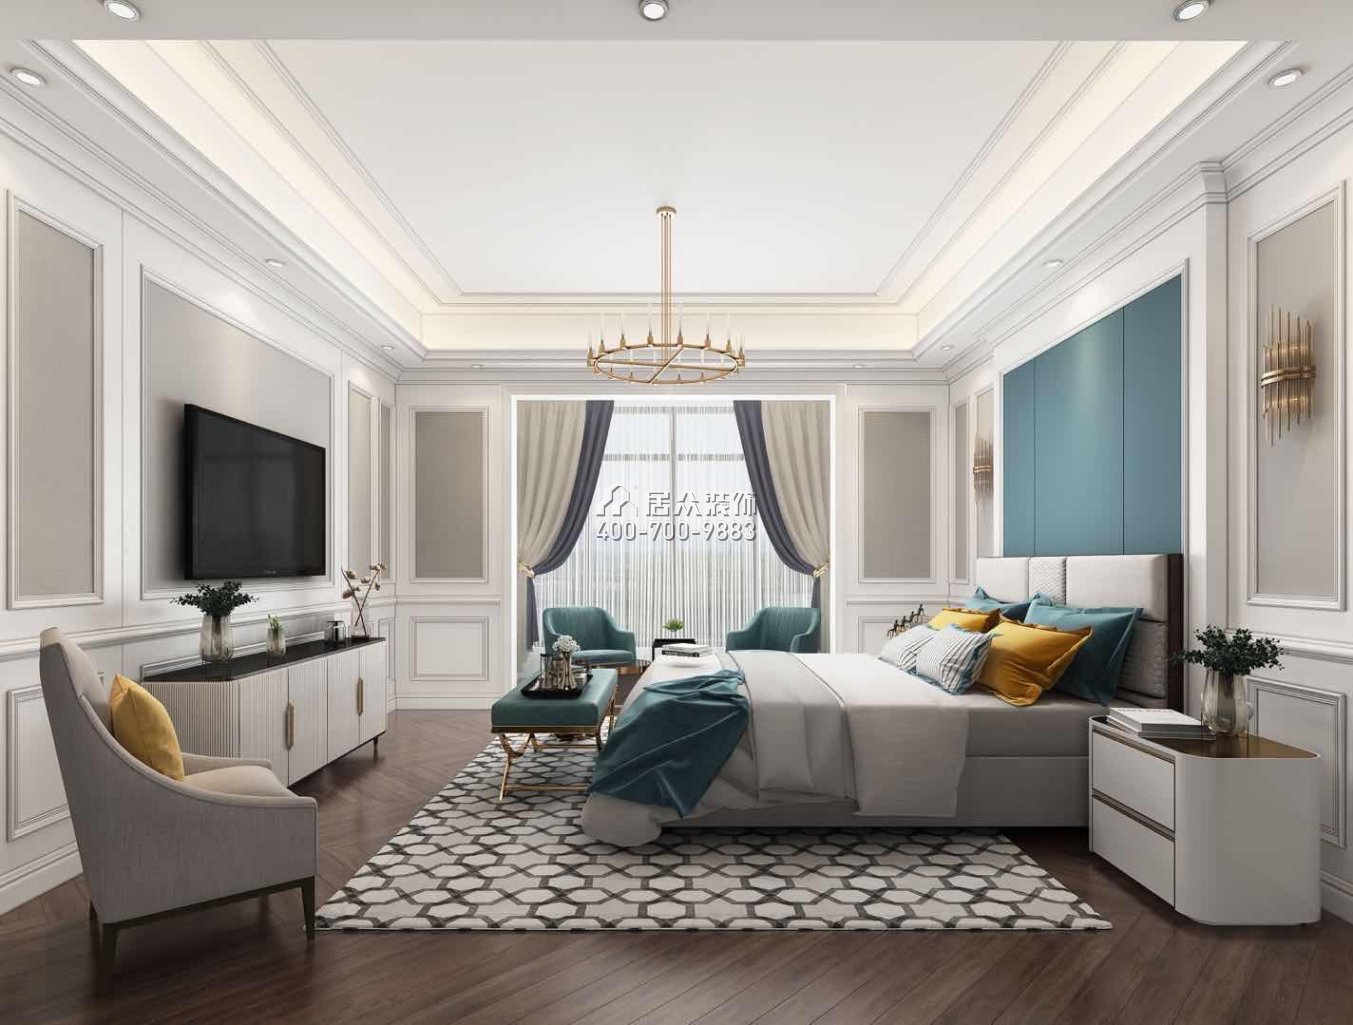 华发山庄220平方米欧式风格平层户型卧室装修效果图